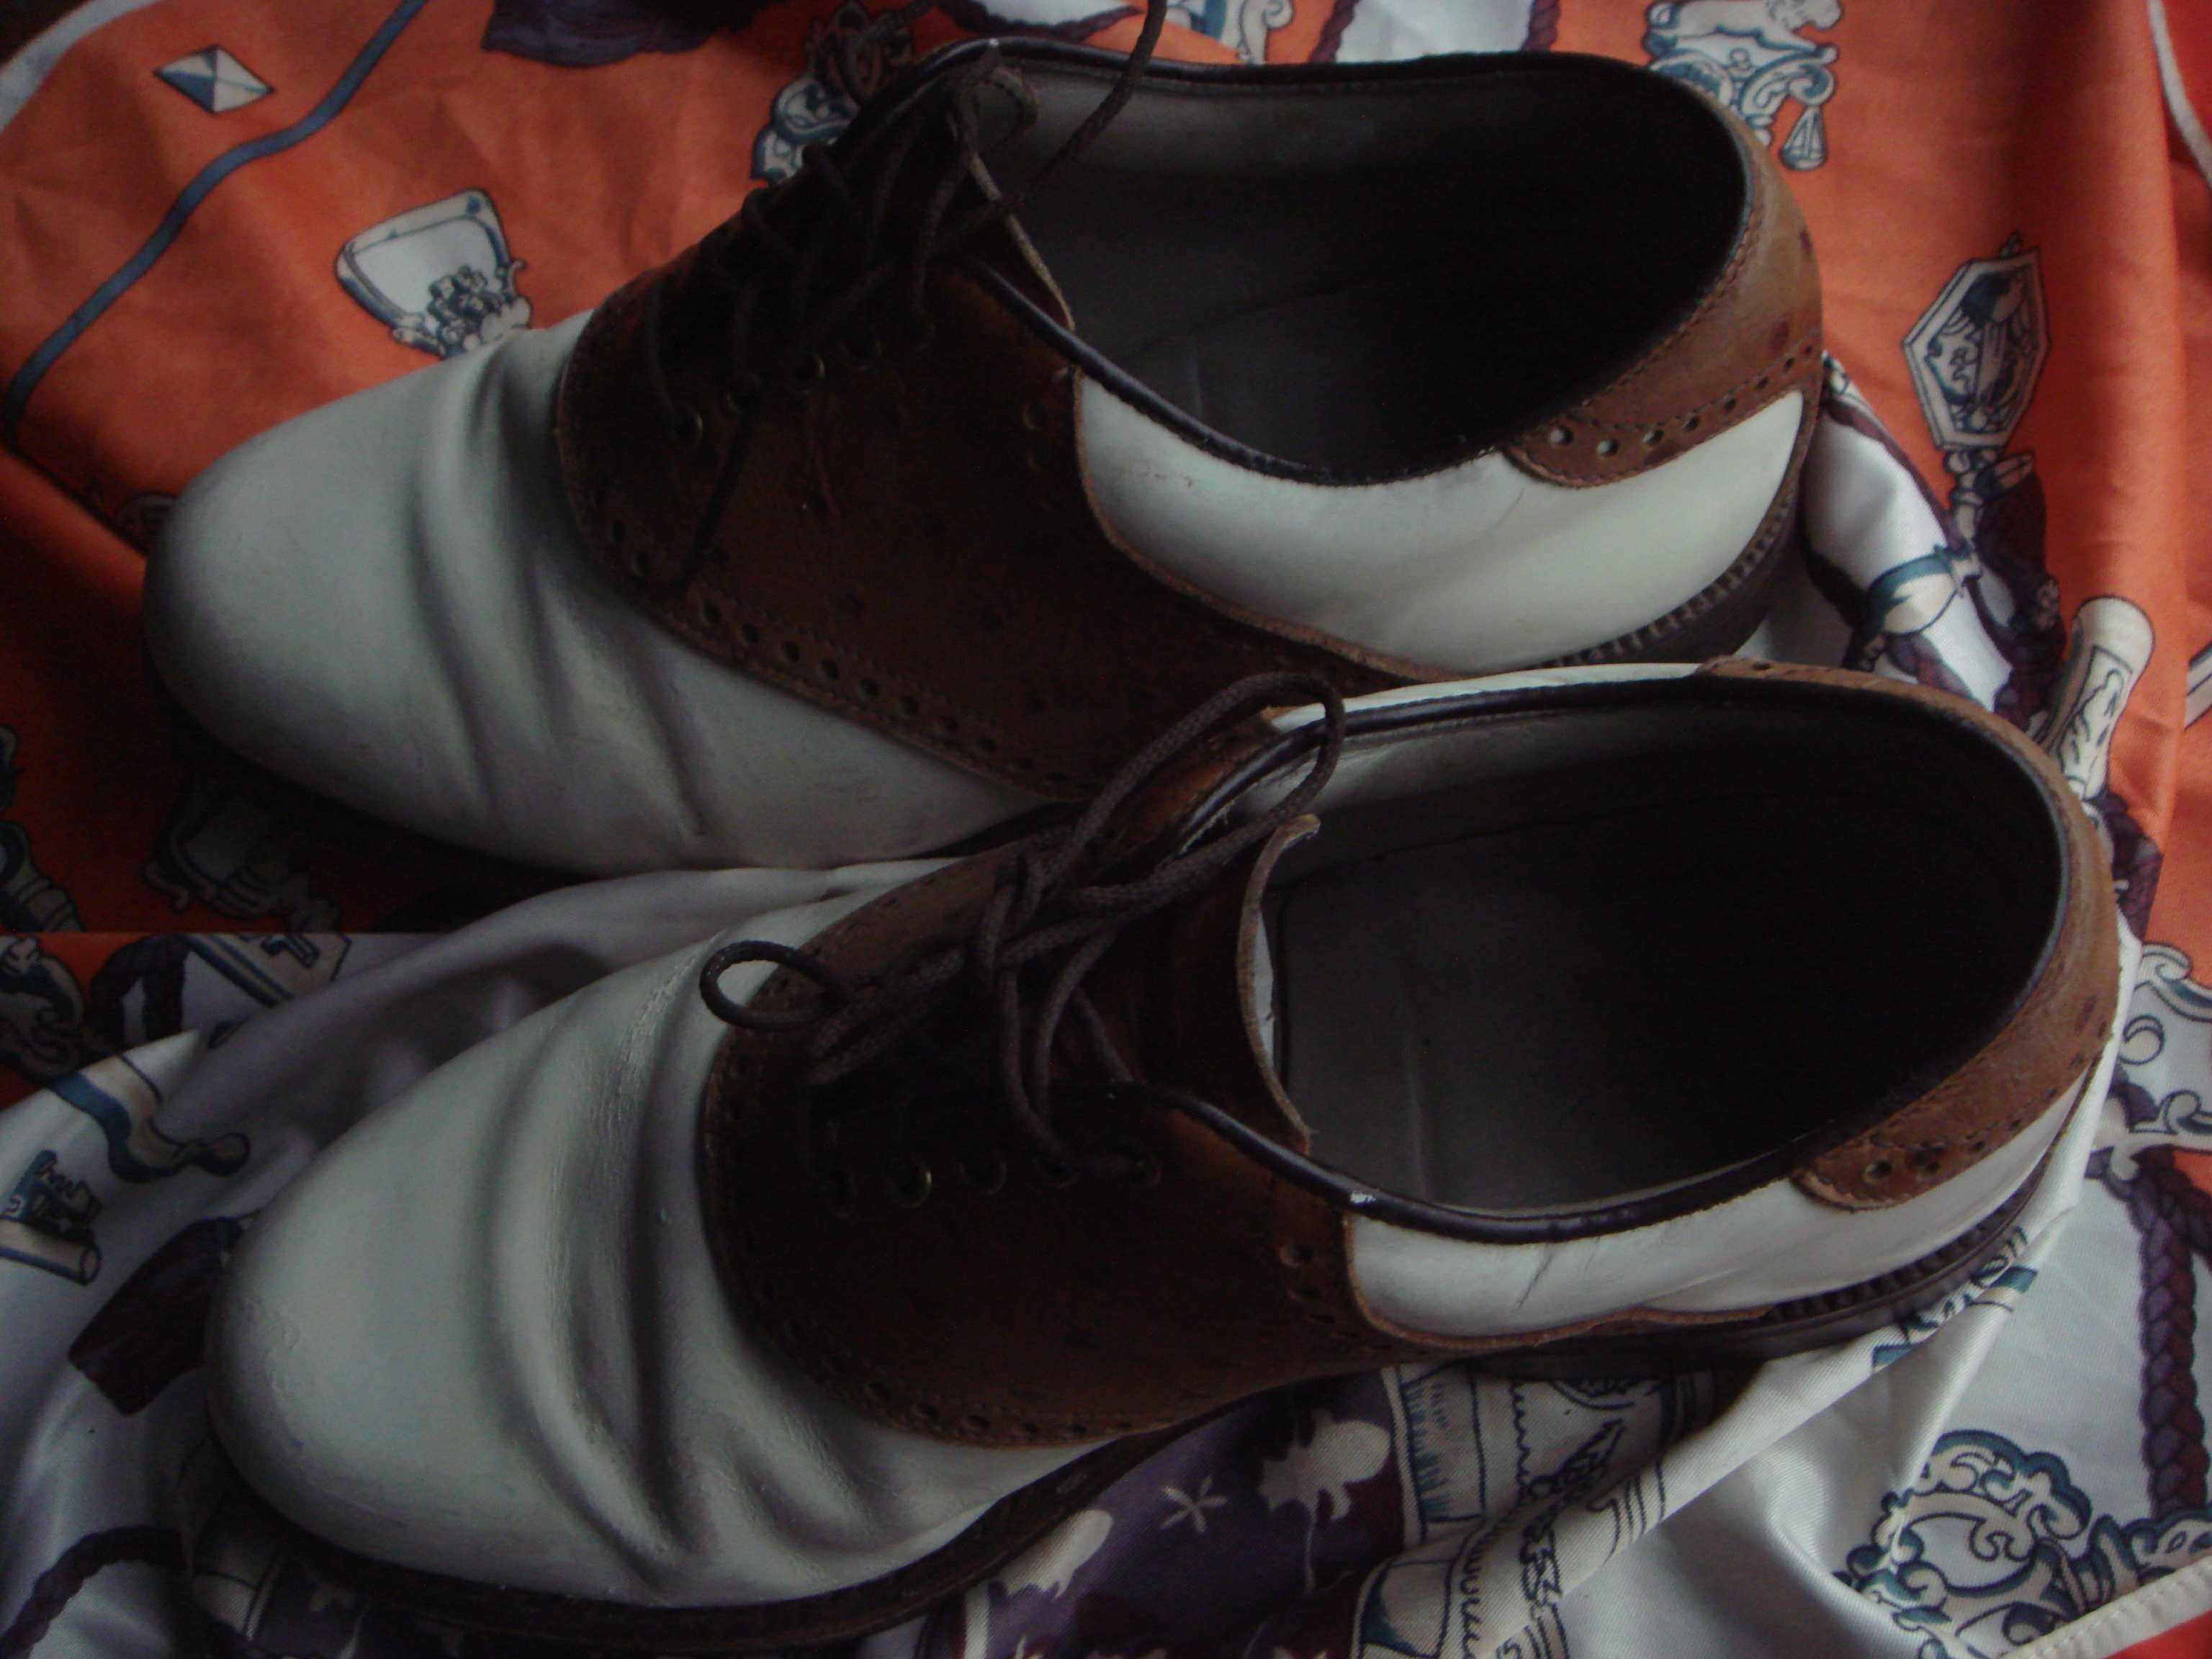 Спец ботинки для гольфа США FootJoy с кожей страуса 3-я кожа 40р.